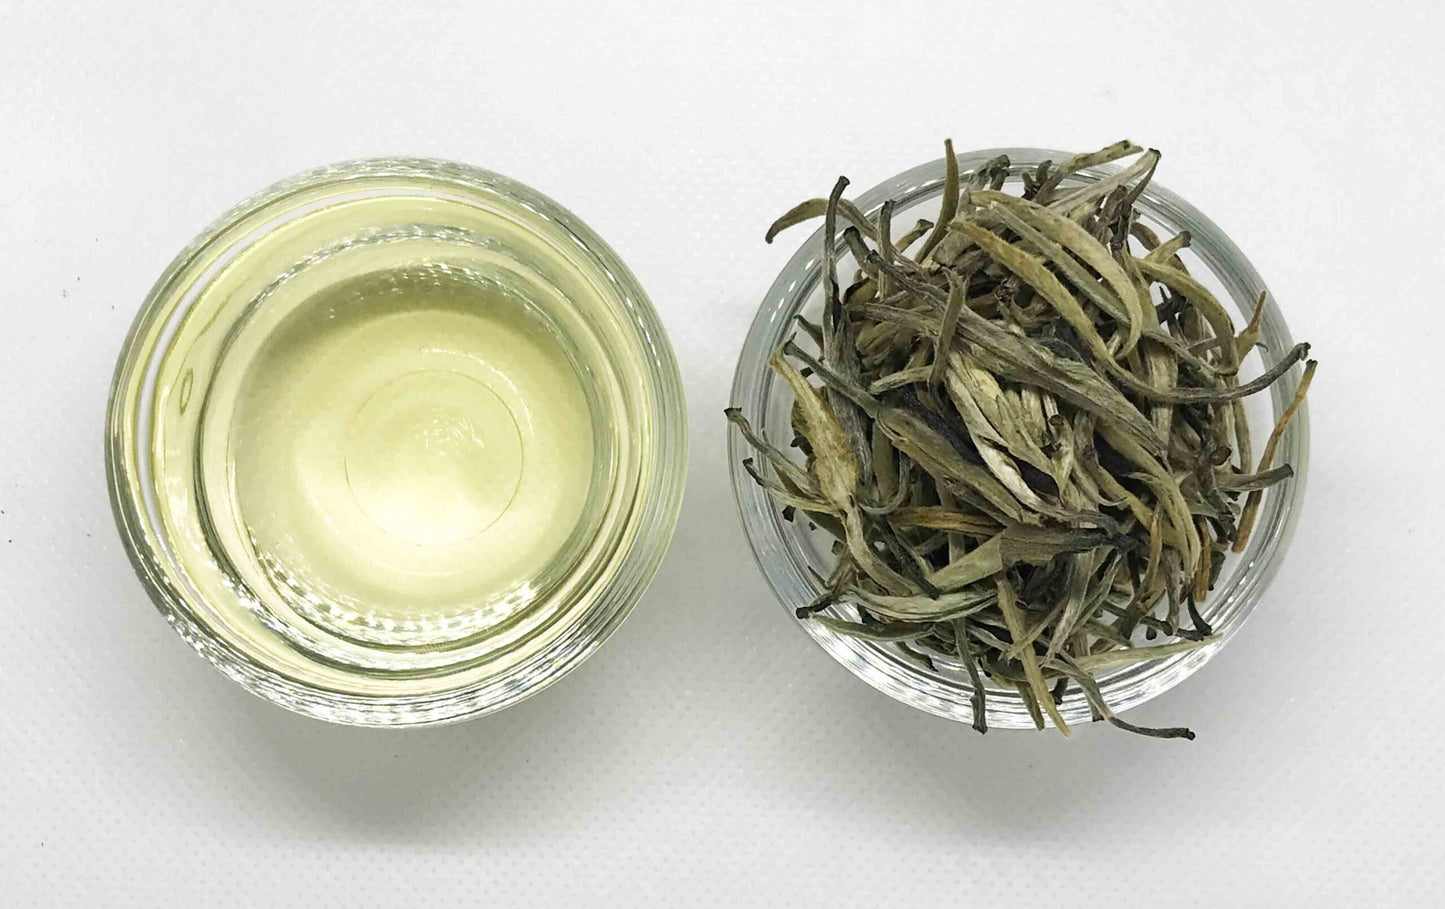 Ceylon Silvertip Tea | White Tea | 150g